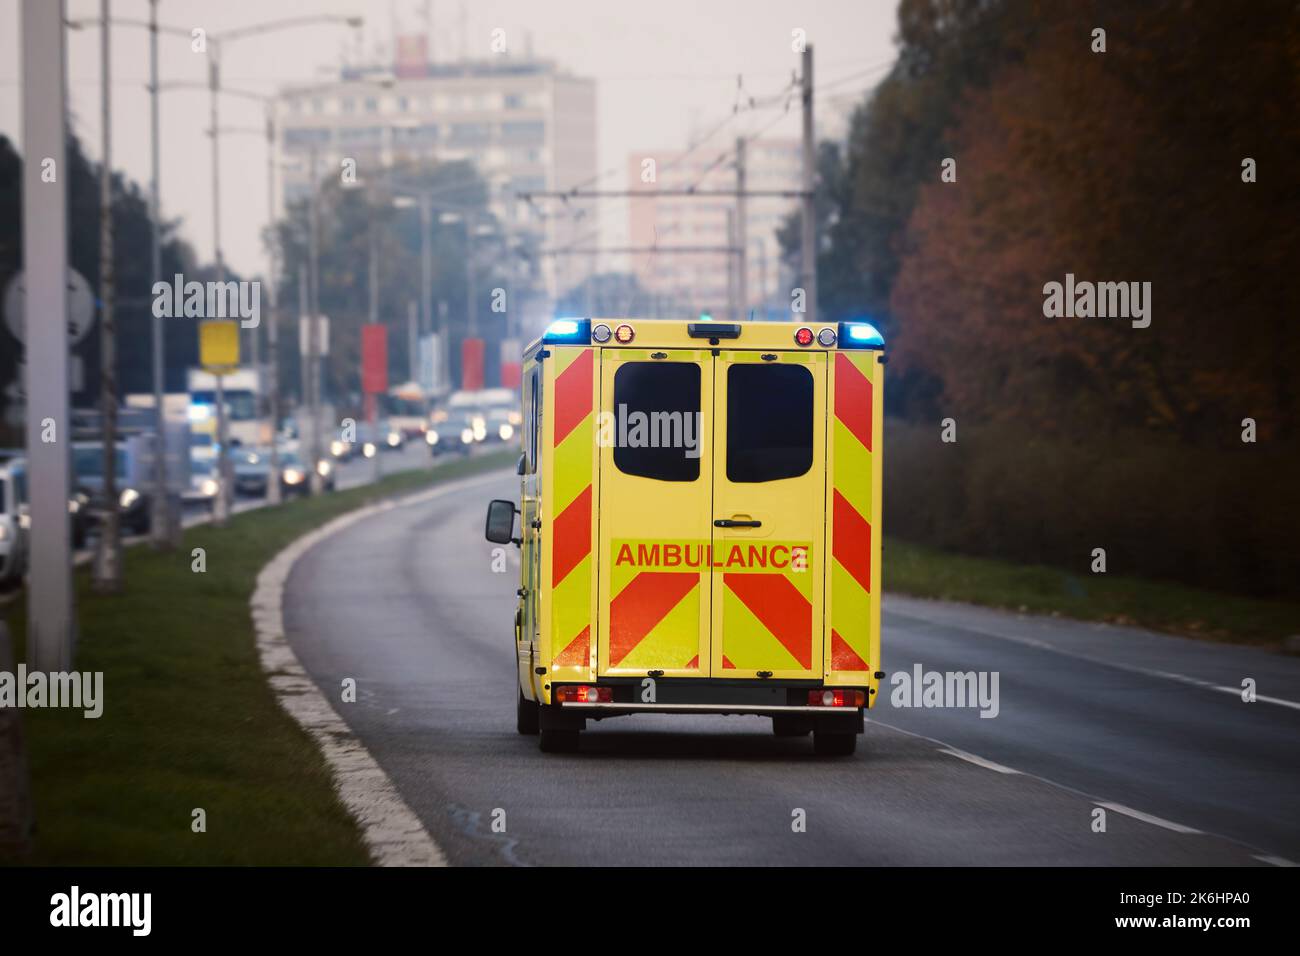 Ambulanza auto di servizio medico di emergenza sulla strada cittadina. Temi di salvataggio, urgenza e assistenza sanitaria. Foto Stock